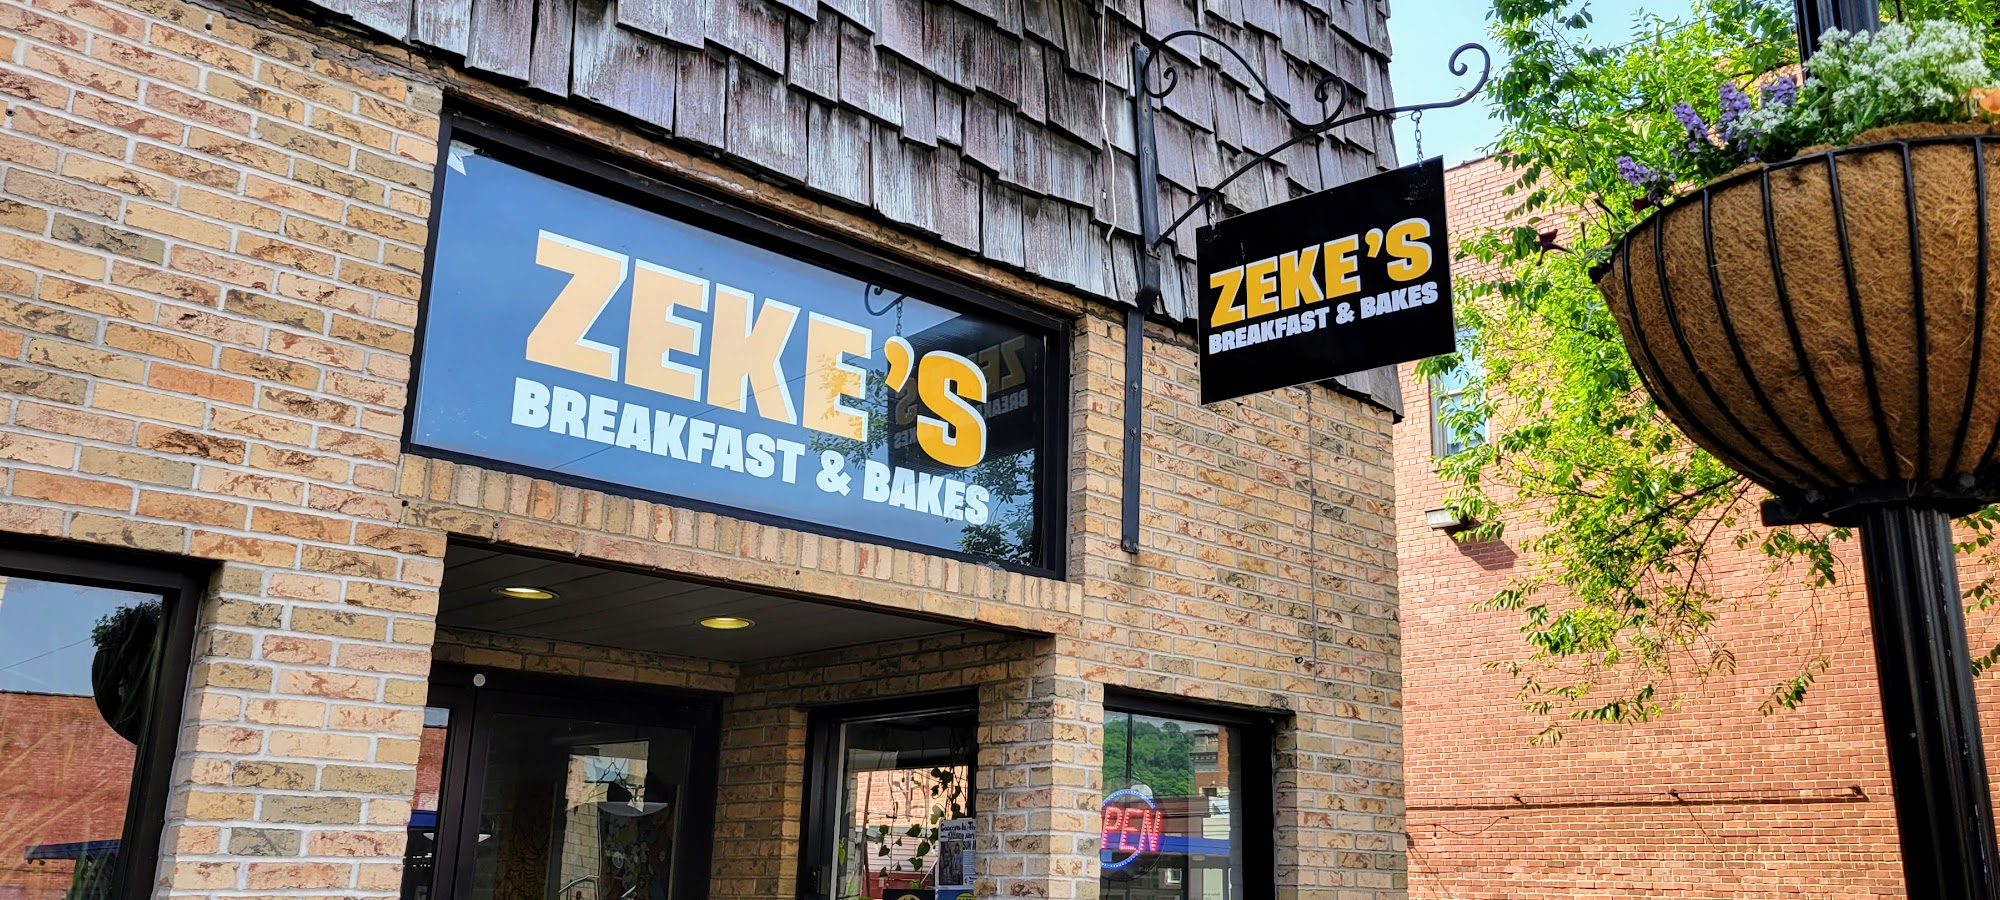 Zeke's Breakfast & Bakes